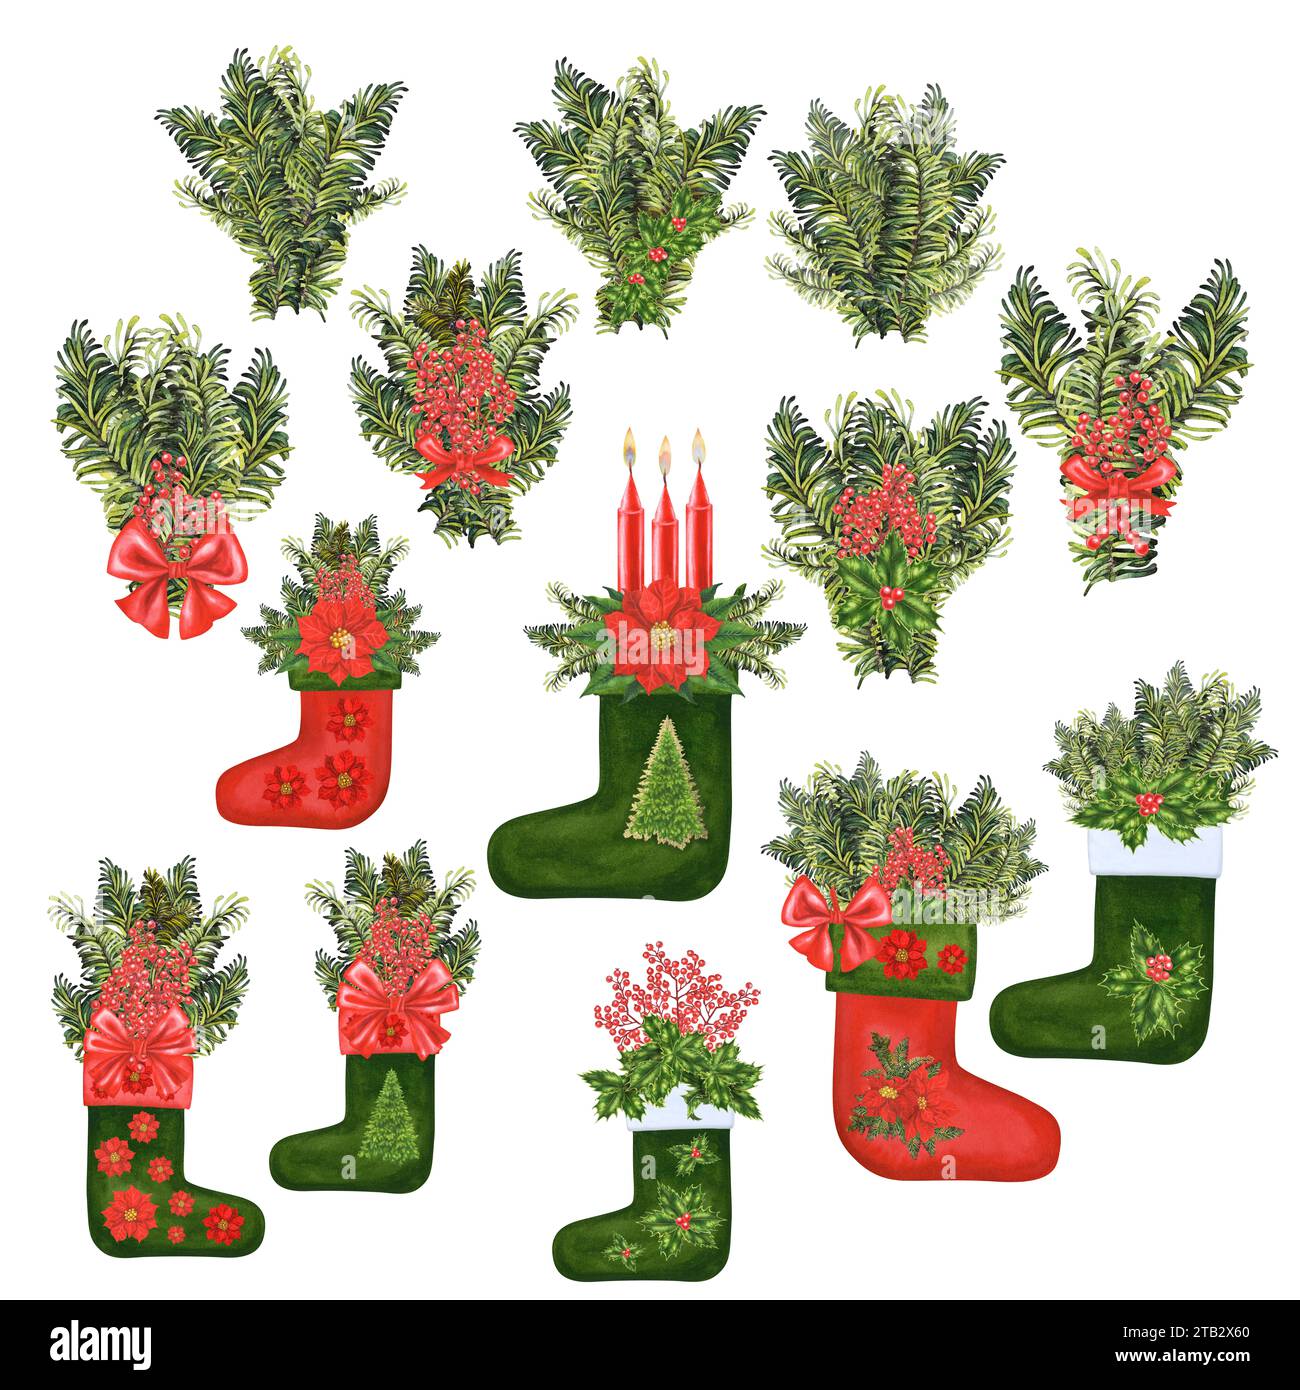 Aquarelle Noël bas rouges et verts pour cadeaux avec design hivernal de poinsettia rouge, houx et branche d'épicéa pour invitations, cartes postales, poste Banque D'Images